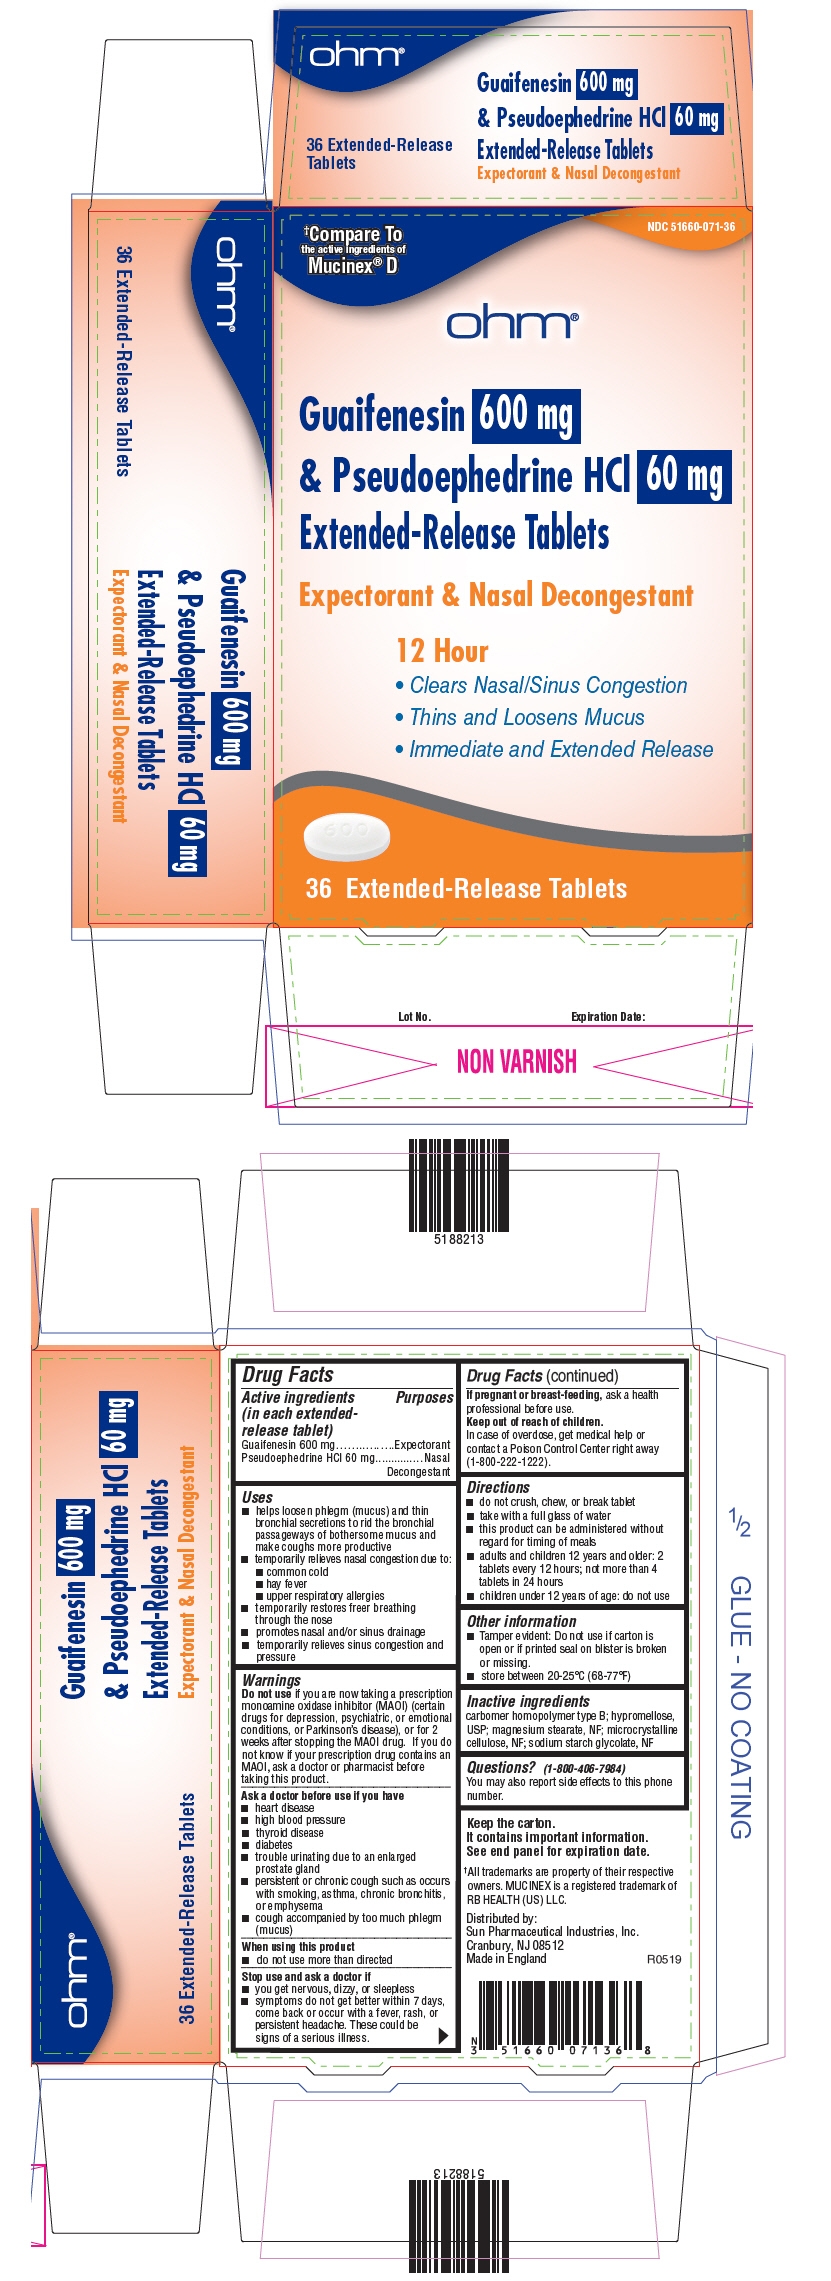 PRINCIPAL DISPLAY PANEL - 600 mg/60 mg Tablet Blister Pack Carton